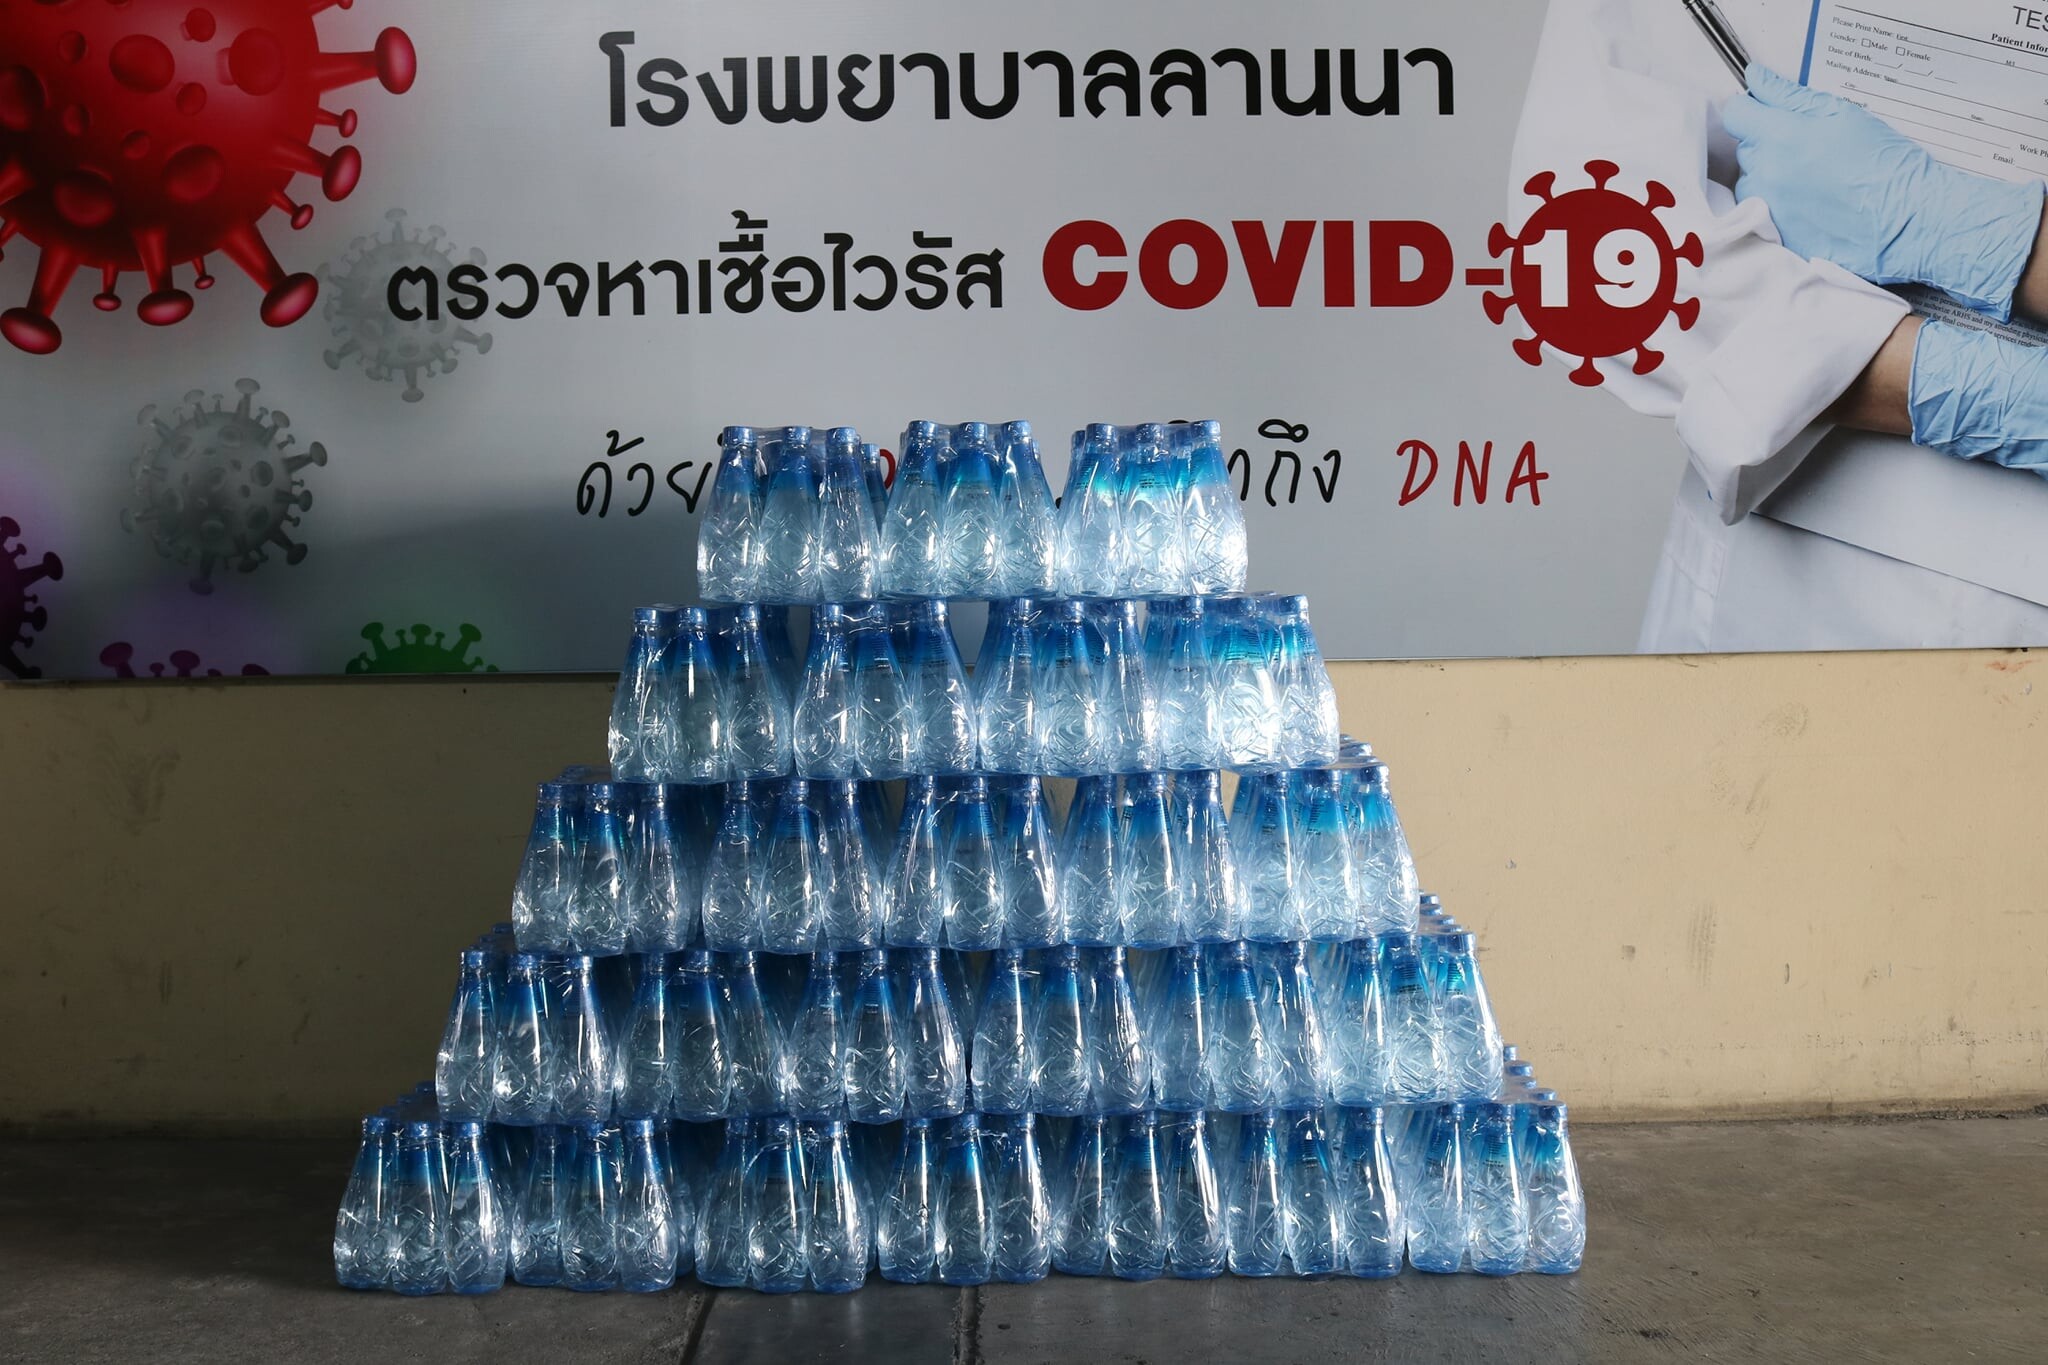 ธนาคารกรุงเทพ มอบน้ำดื่มสู้ภัยโควิด-19 บุคลากรด่านหน้า โรงพยาบาลลานนา